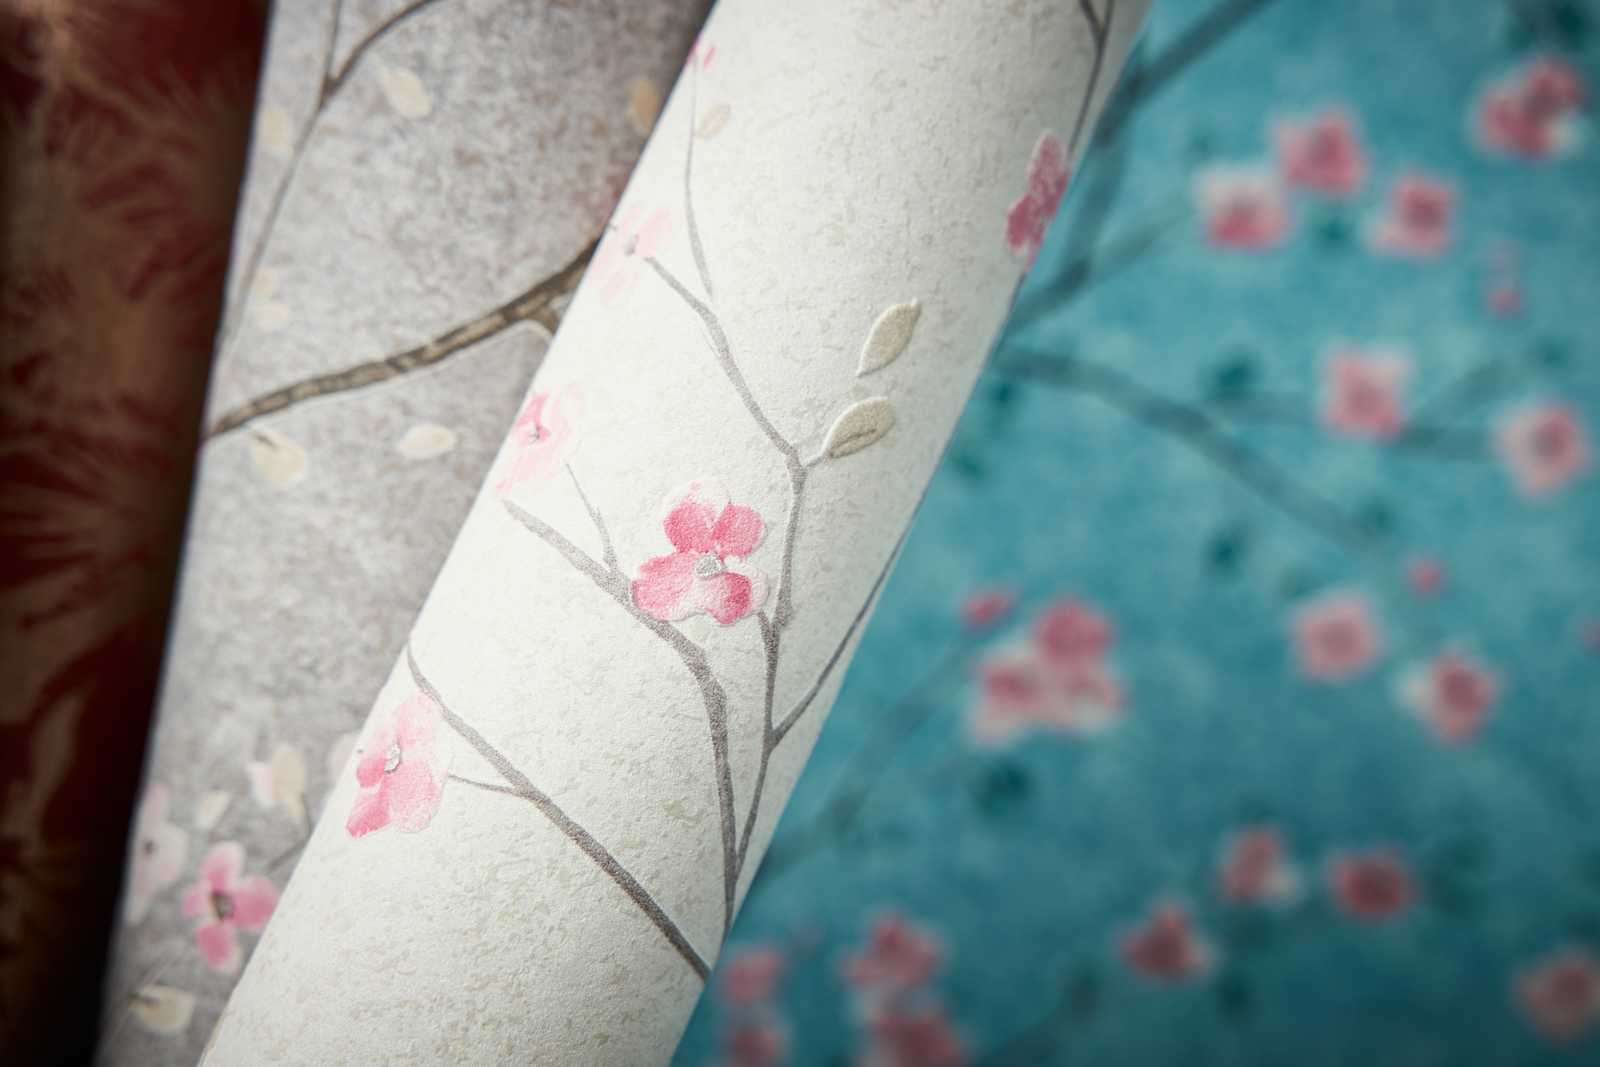             Papier peint japonais fleurs de cerisier - bleu, vert, rose
        